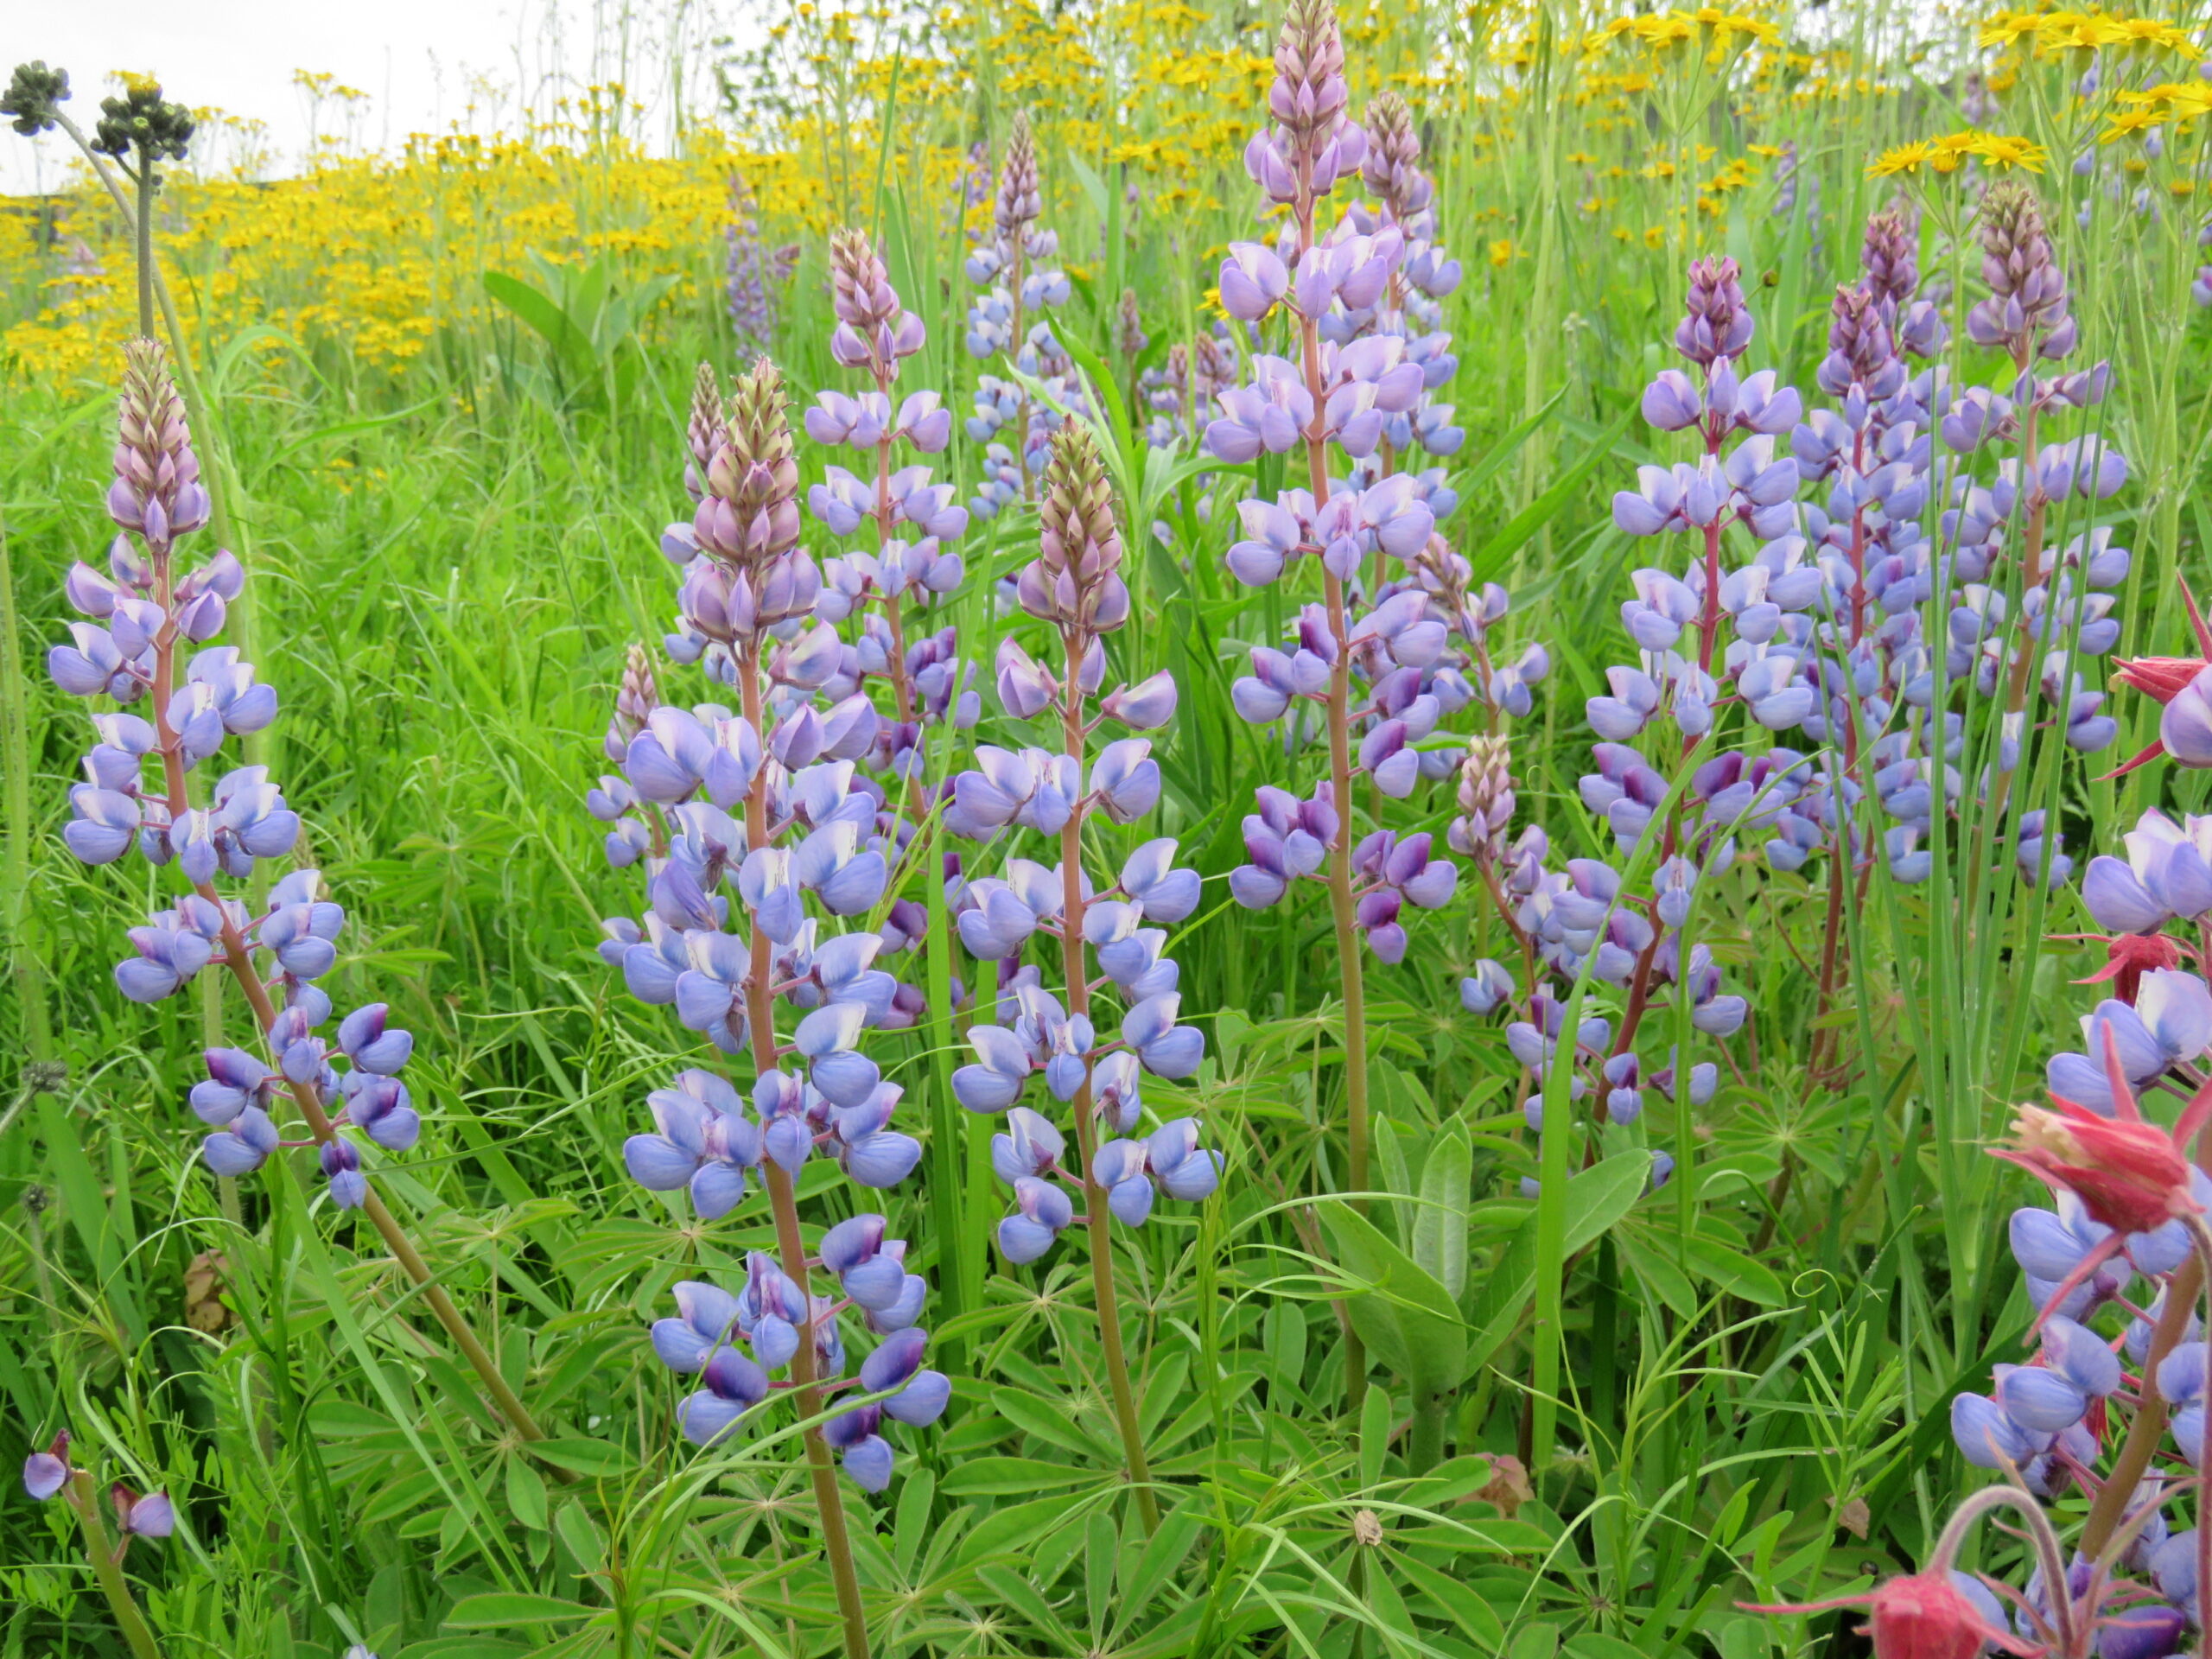 purple lupines in a field